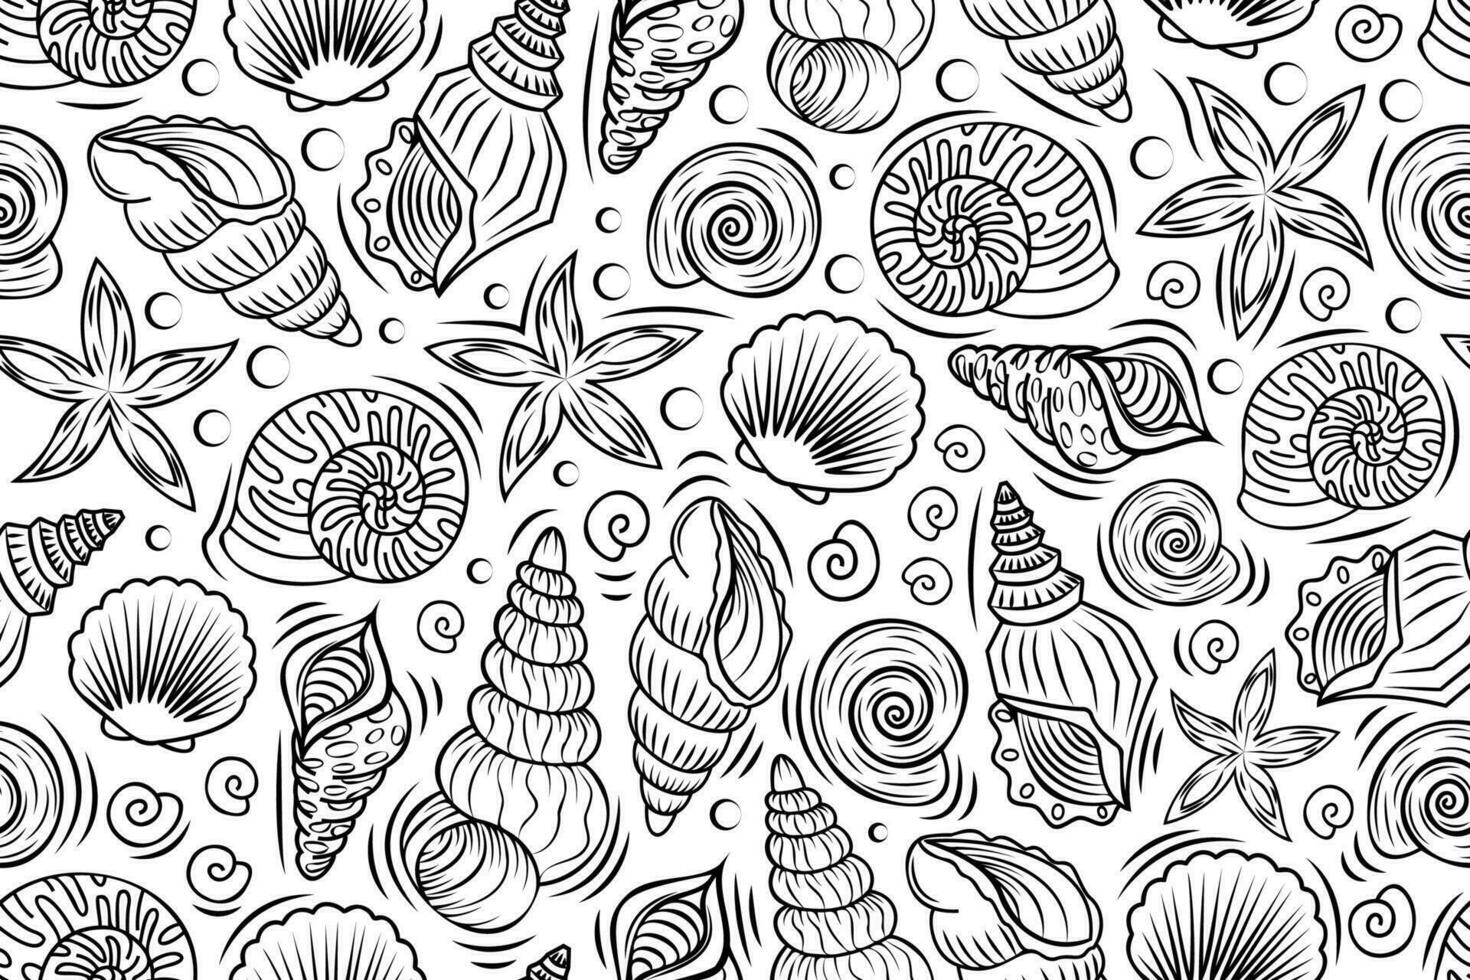 linje konst sömlös mönster med översikt skal och blötdjur. linjär illustrationer med under vattnet varelser i svart och vit färger. vektor